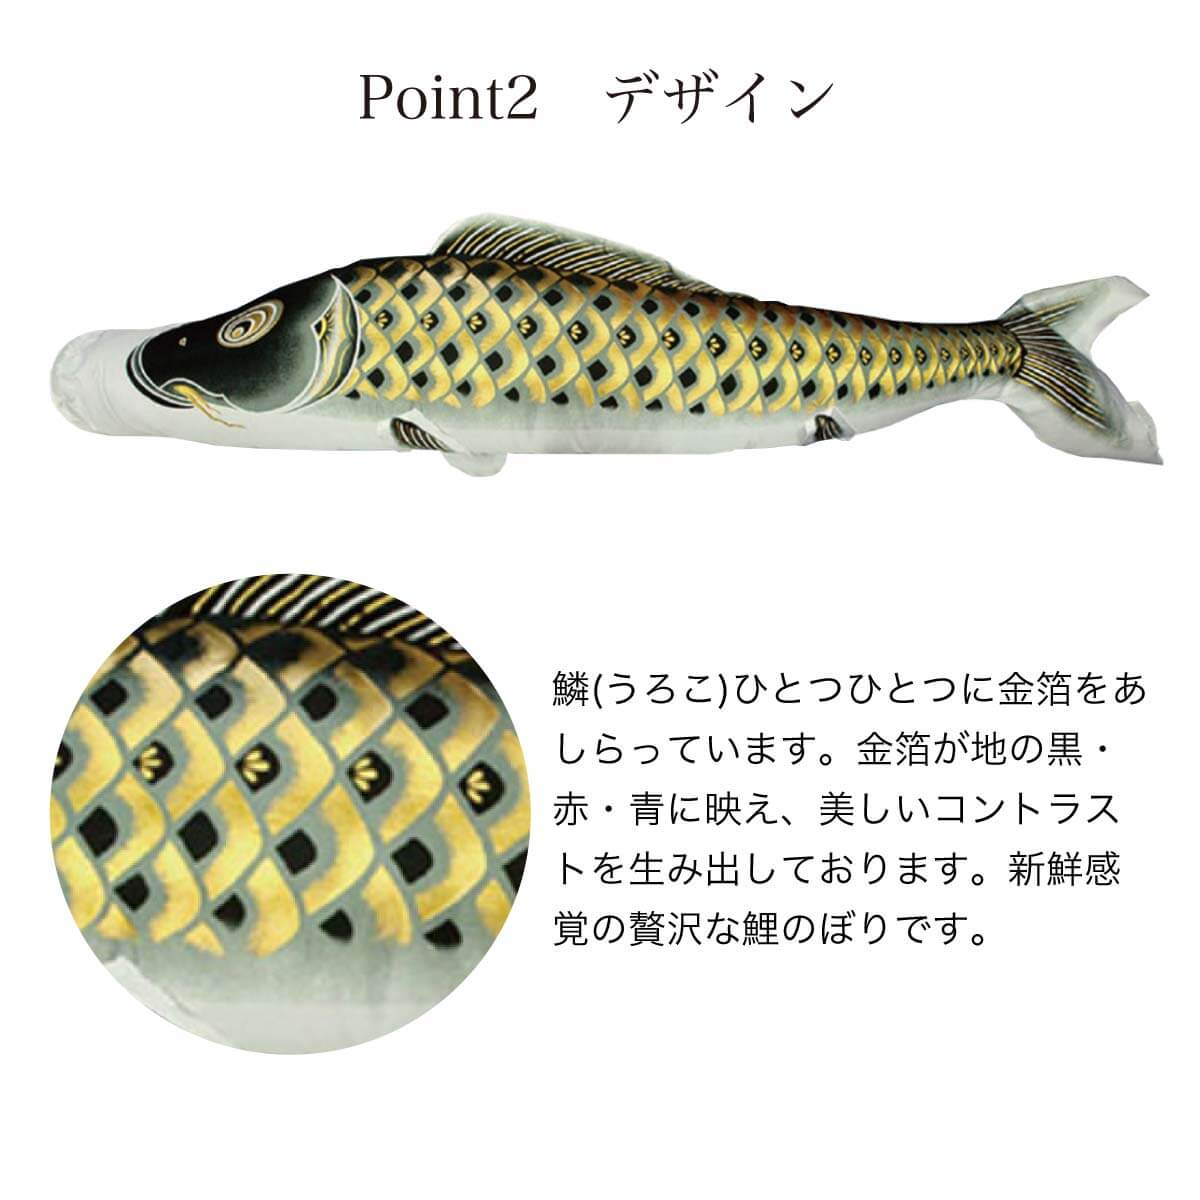 鯉のぼり 1.5mベランダセット [黄金 輝] ポール 矢車 ロープ 付 家紋